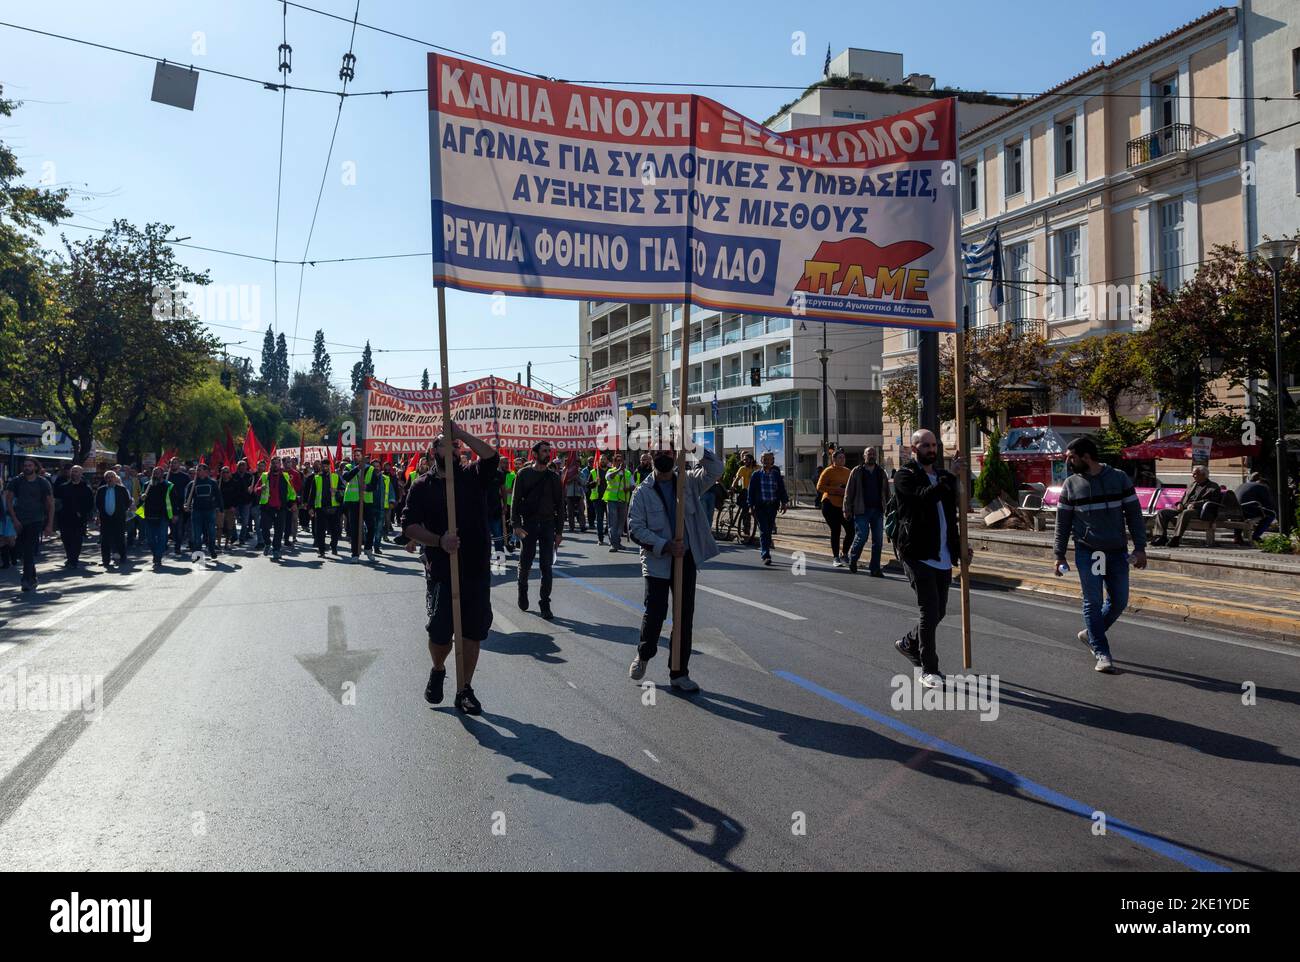 Dimostrazione dei sindacati durante uno sciopero generale contro l'eccessivo costo della vita, l'elevato costo dell'energia, l'inflazione e l'austerità. Foto Stock